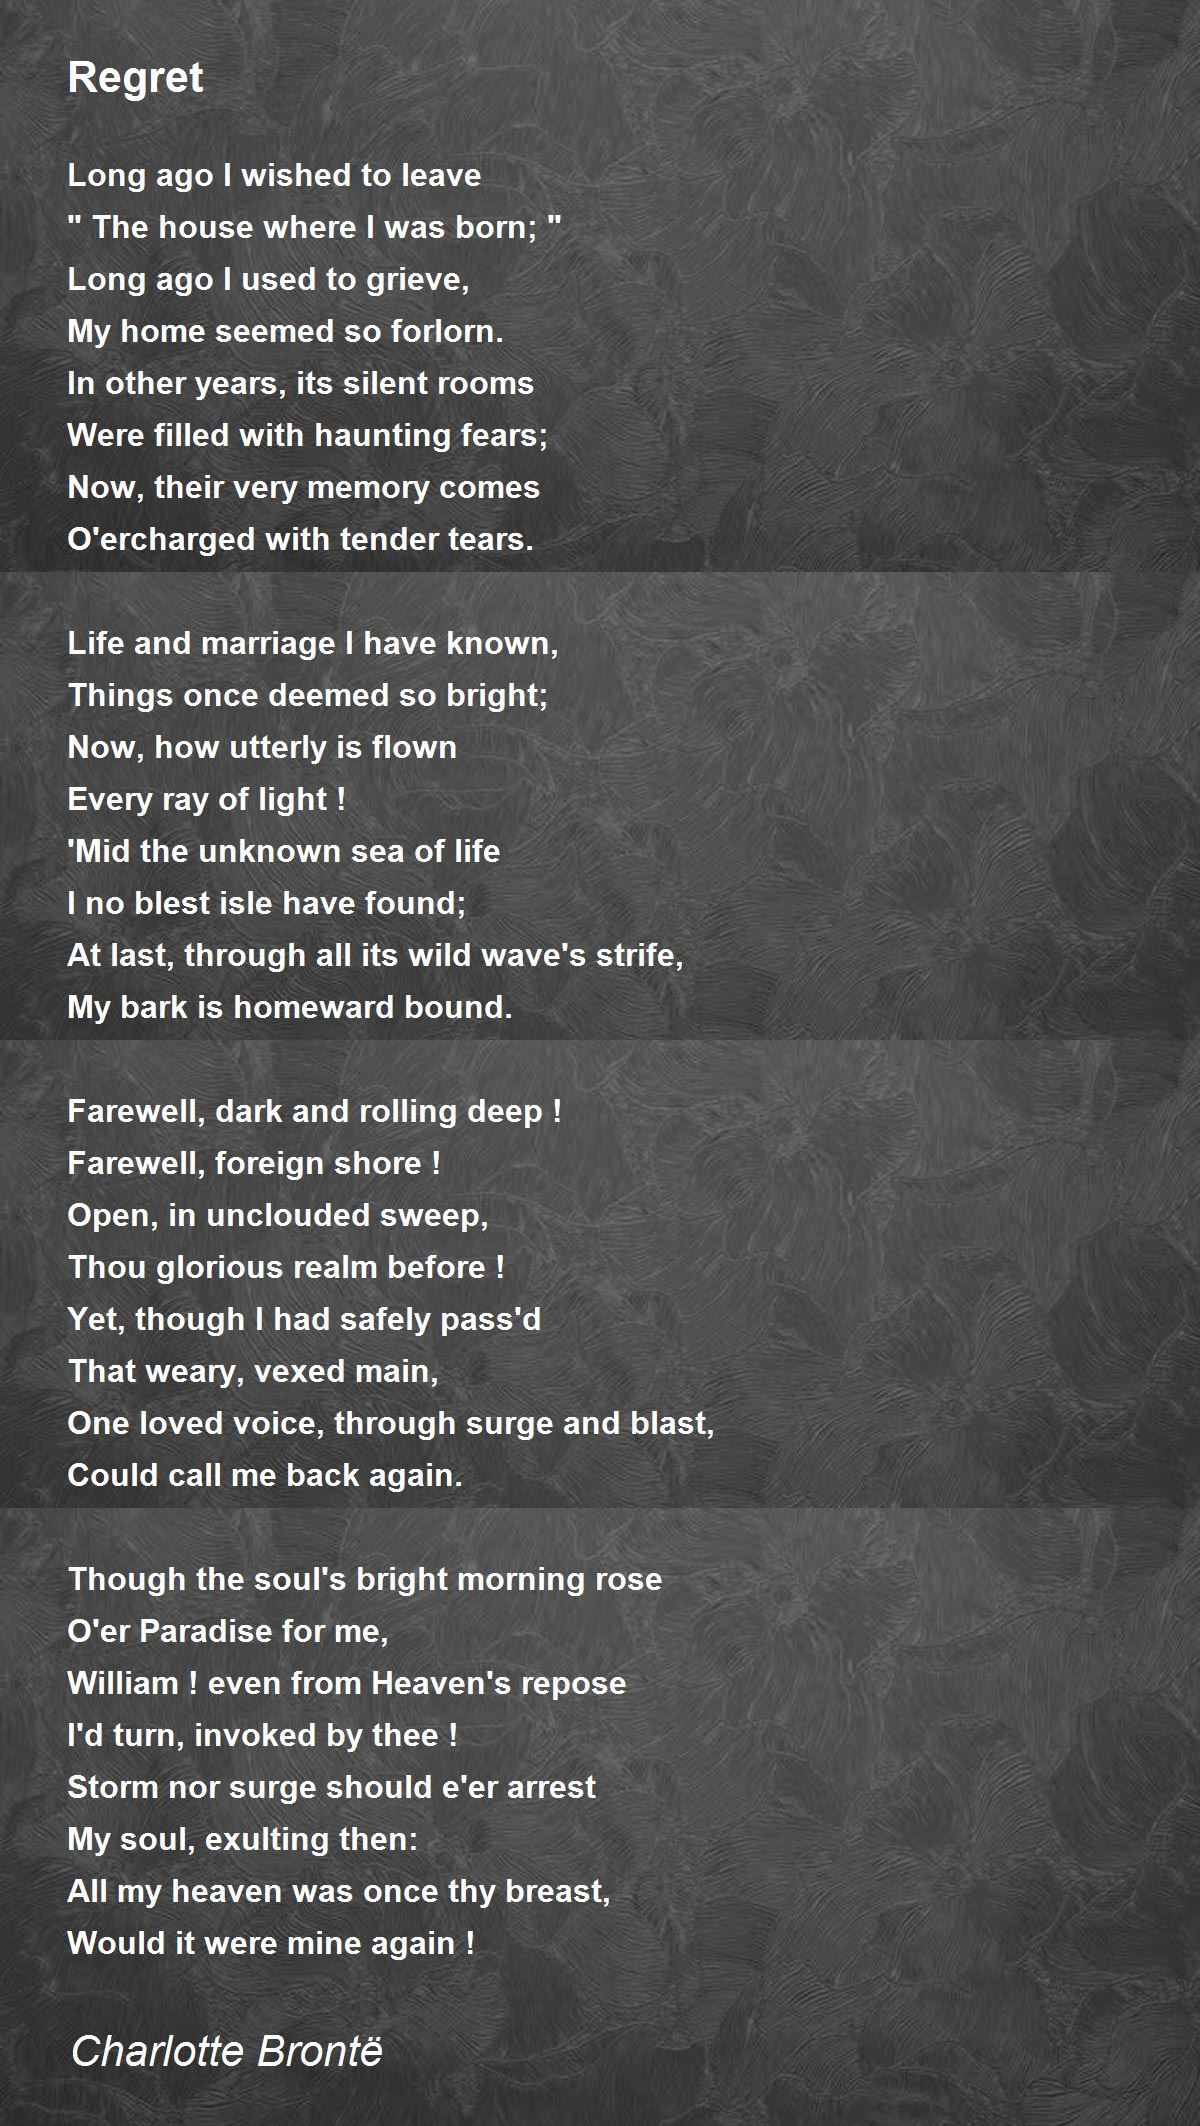 Regret Poem by Charlotte Brontë - Poem Hunter